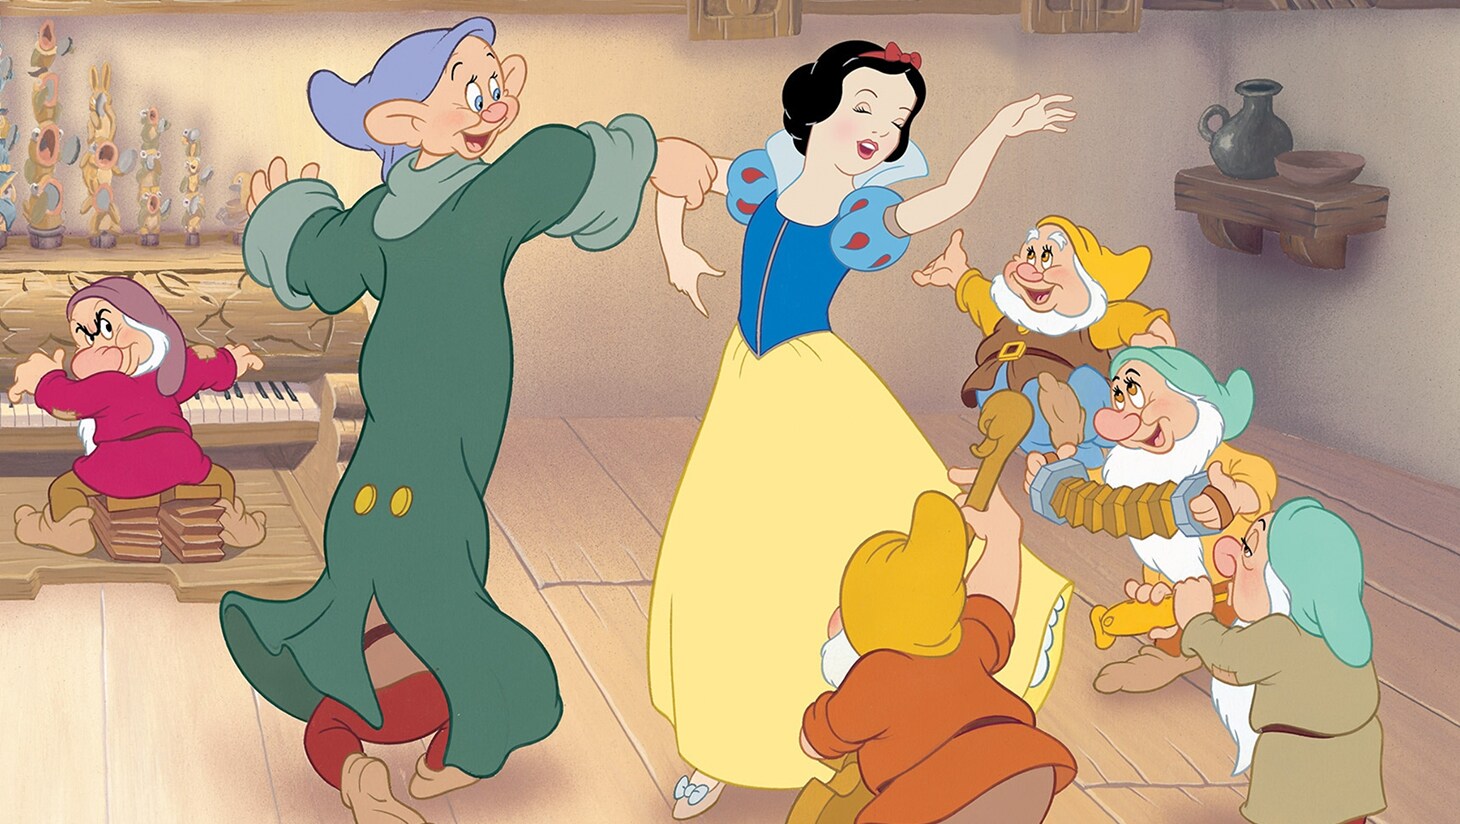 Snow White dances with the Seven Dwarfs